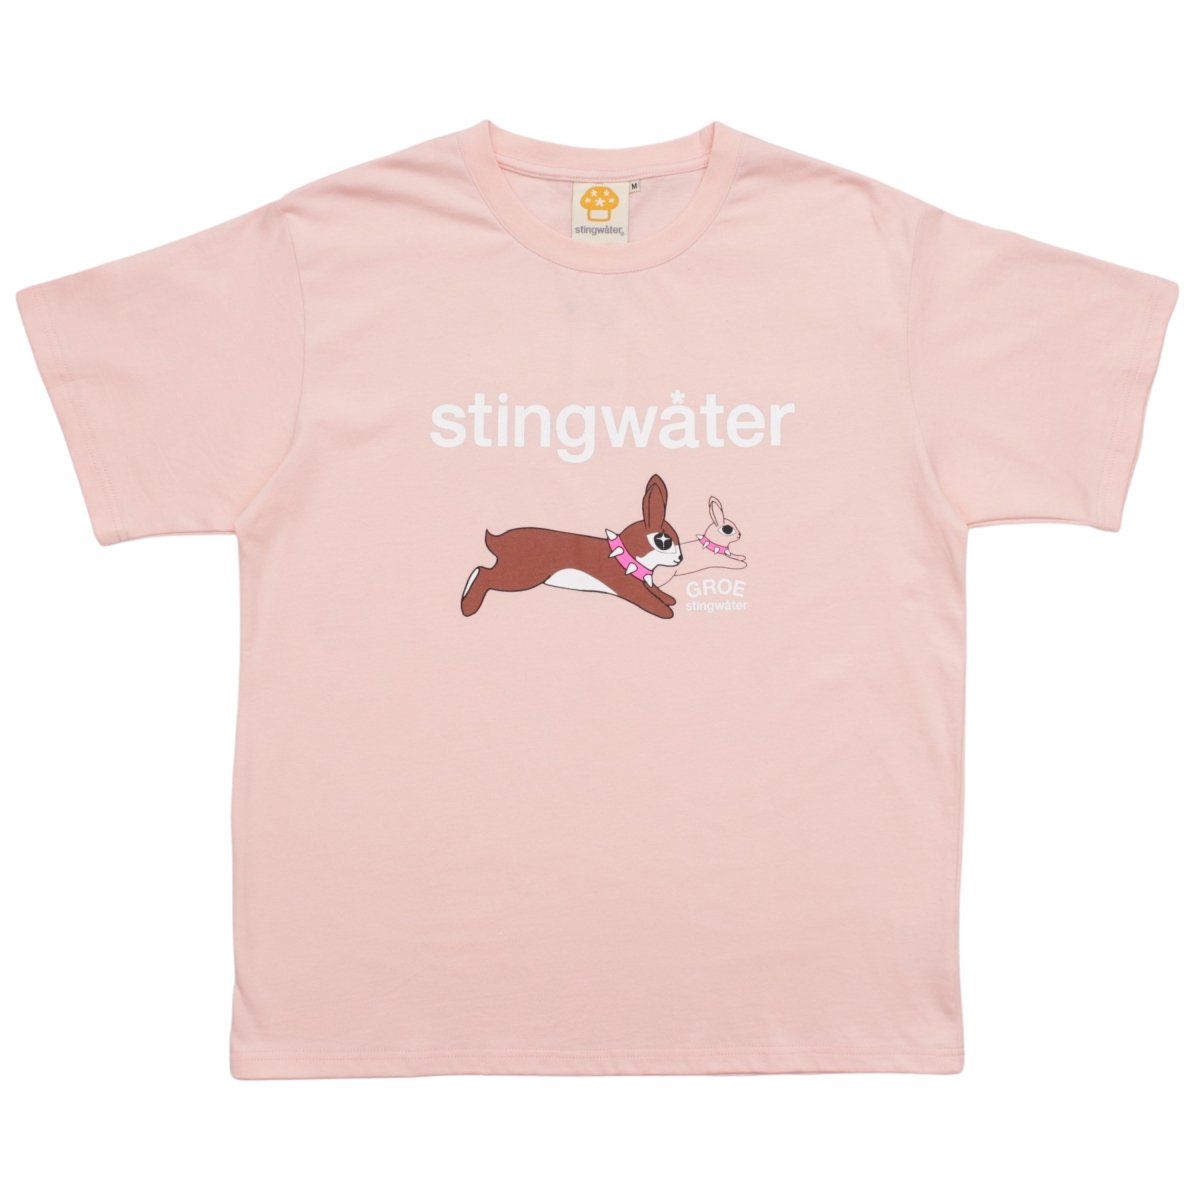 stingwater Rabbit T-Shirt Pink L | www.yokecomms.com